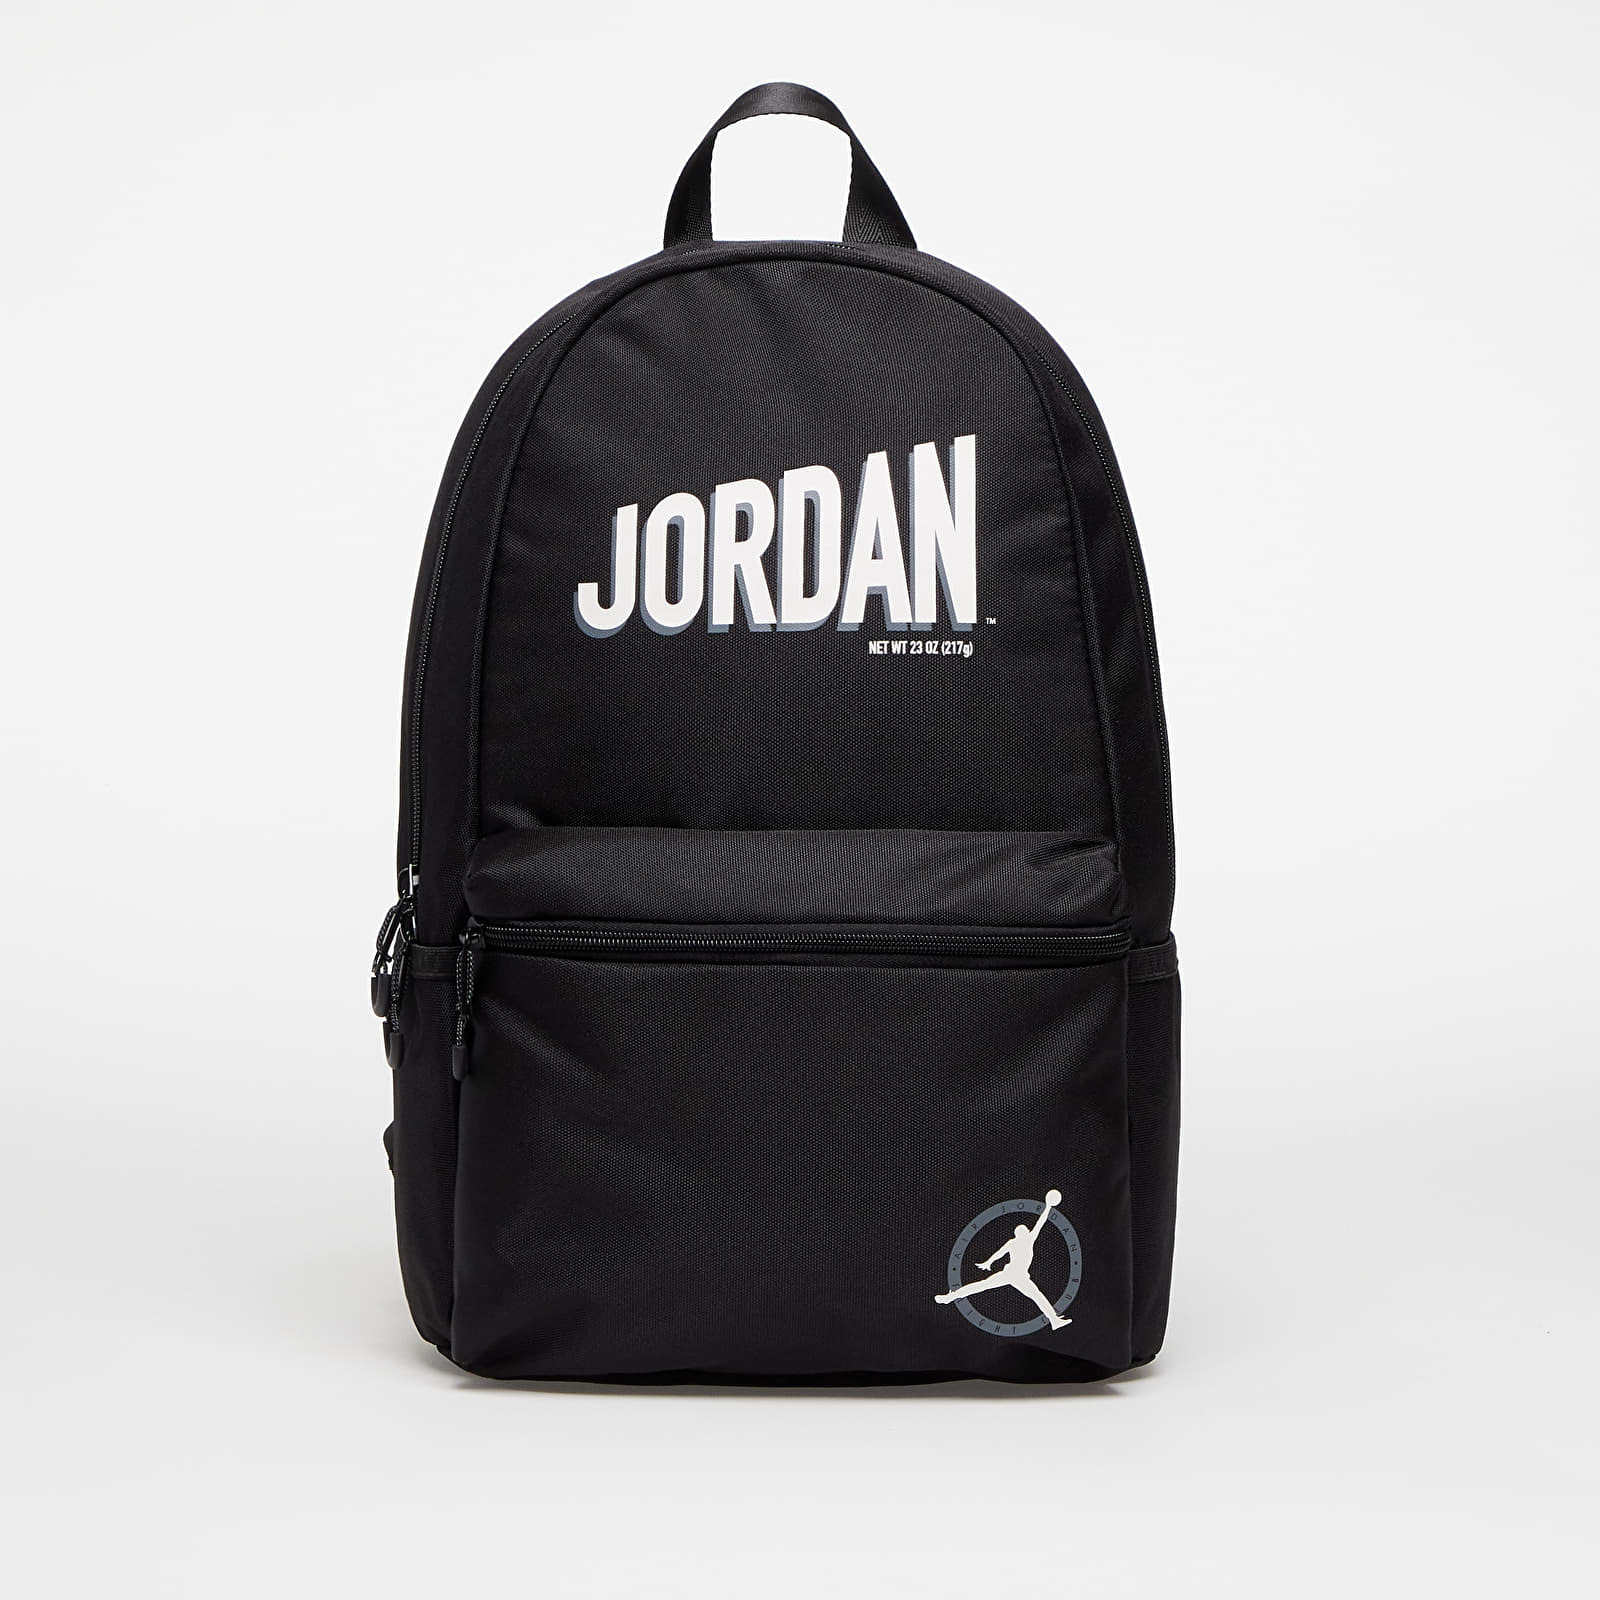 Jordan - mj mvp flight daypack black